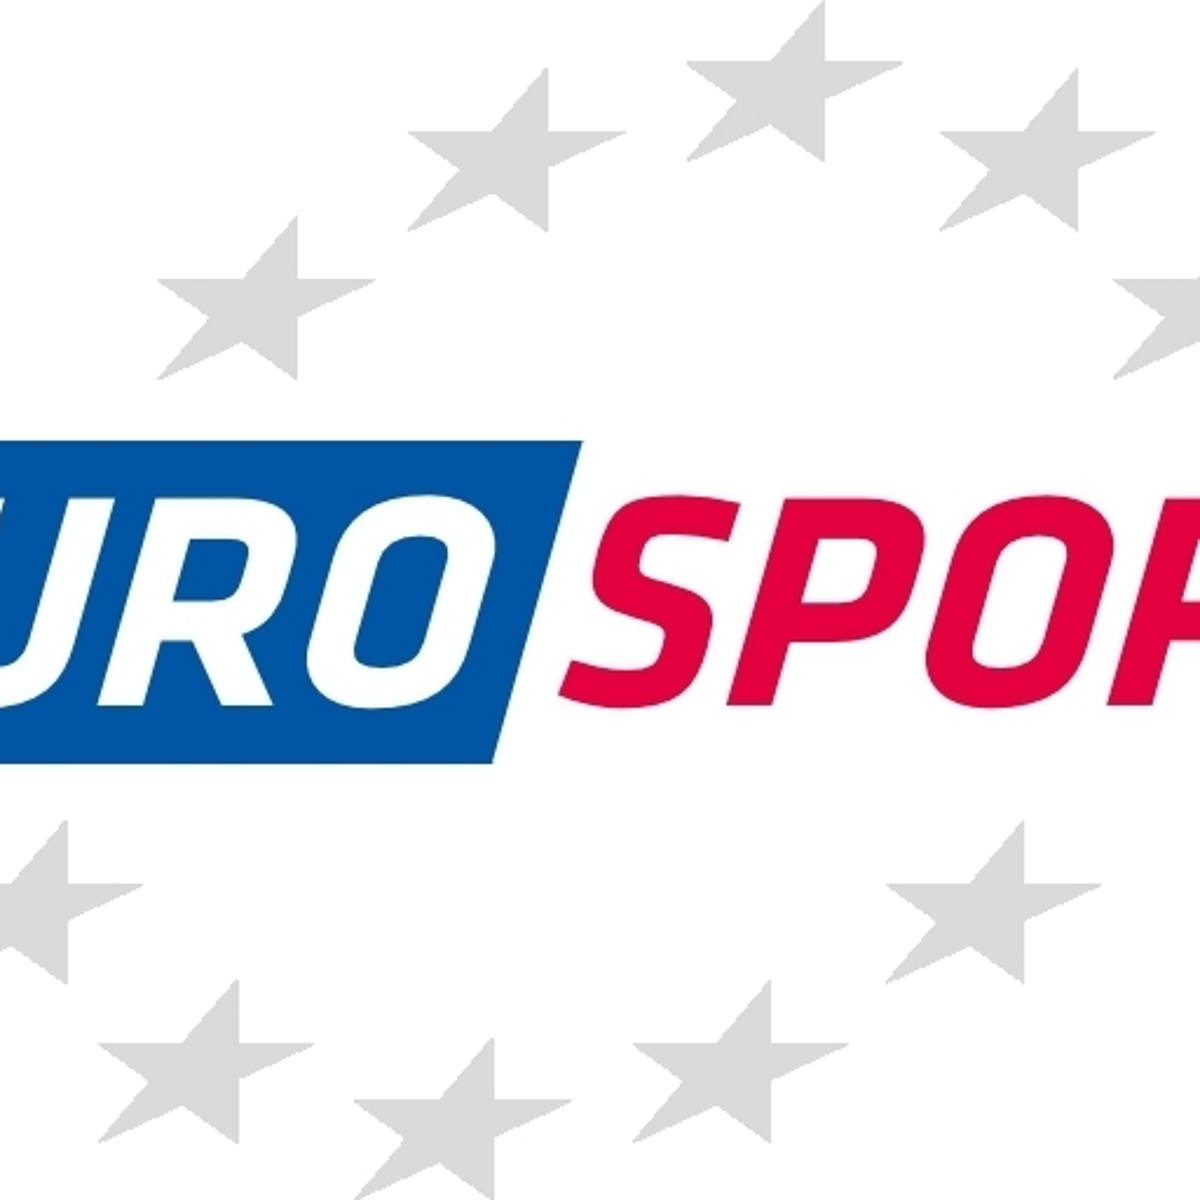 Программа на канале евроспорт на неделю. Евроспорт. Eurosport 4. Евроспорт плеер. Евроспорт фото.